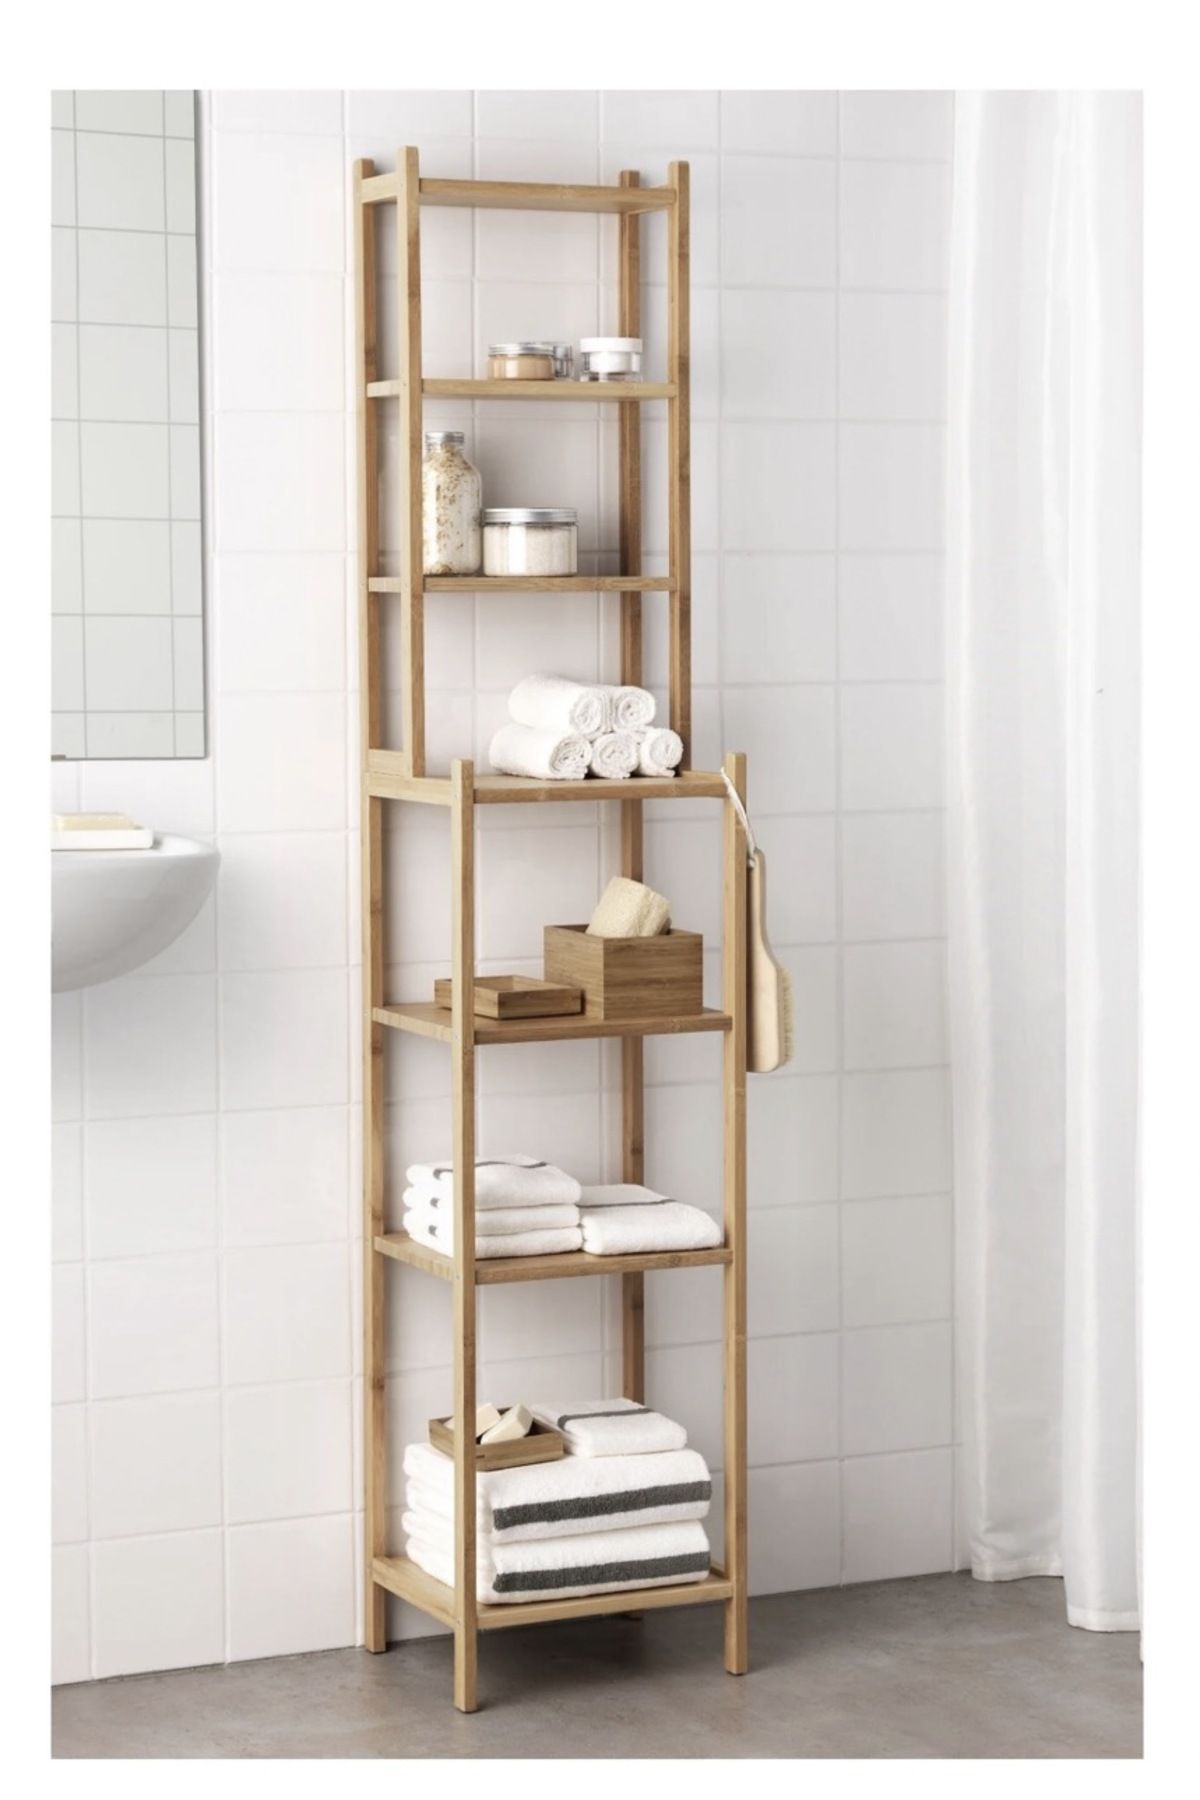 IKEA Ragrund Banyo Rafı Dayanıklı Bambu, 33x28x163 Cm Dolap